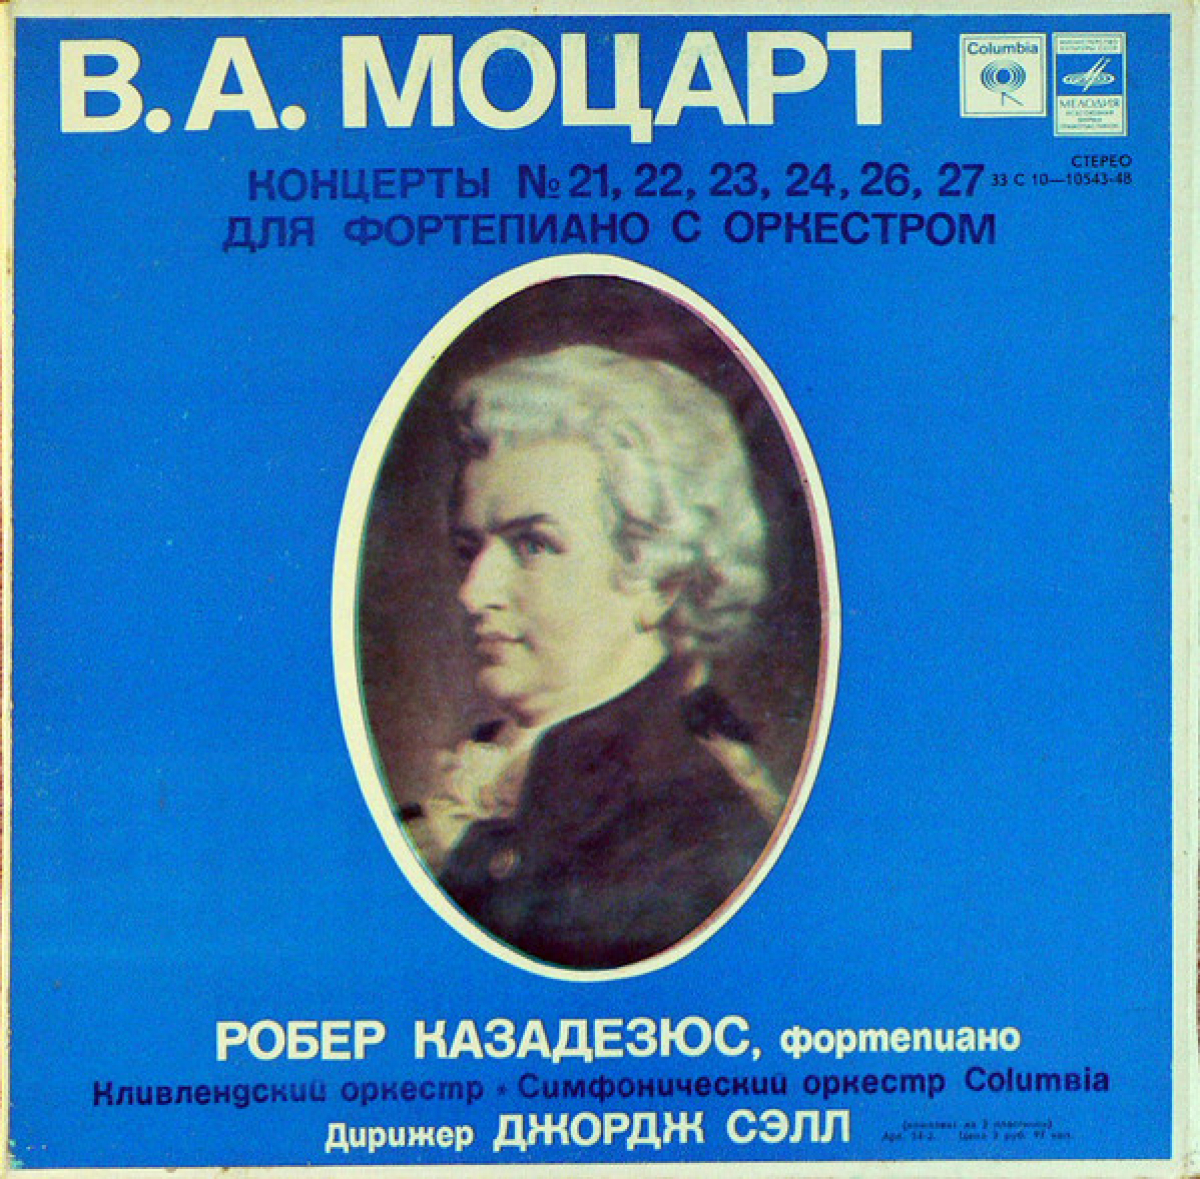 Моцарт концерт 21 для фортепиано с оркестром. Моцарт концерт для фортепиано с оркестром №21. Моцарт концерт 22 для фортепиано с оркестром. Моцарт концерт №8 для фортепиано с оркестром. Моцарт концерт 23.